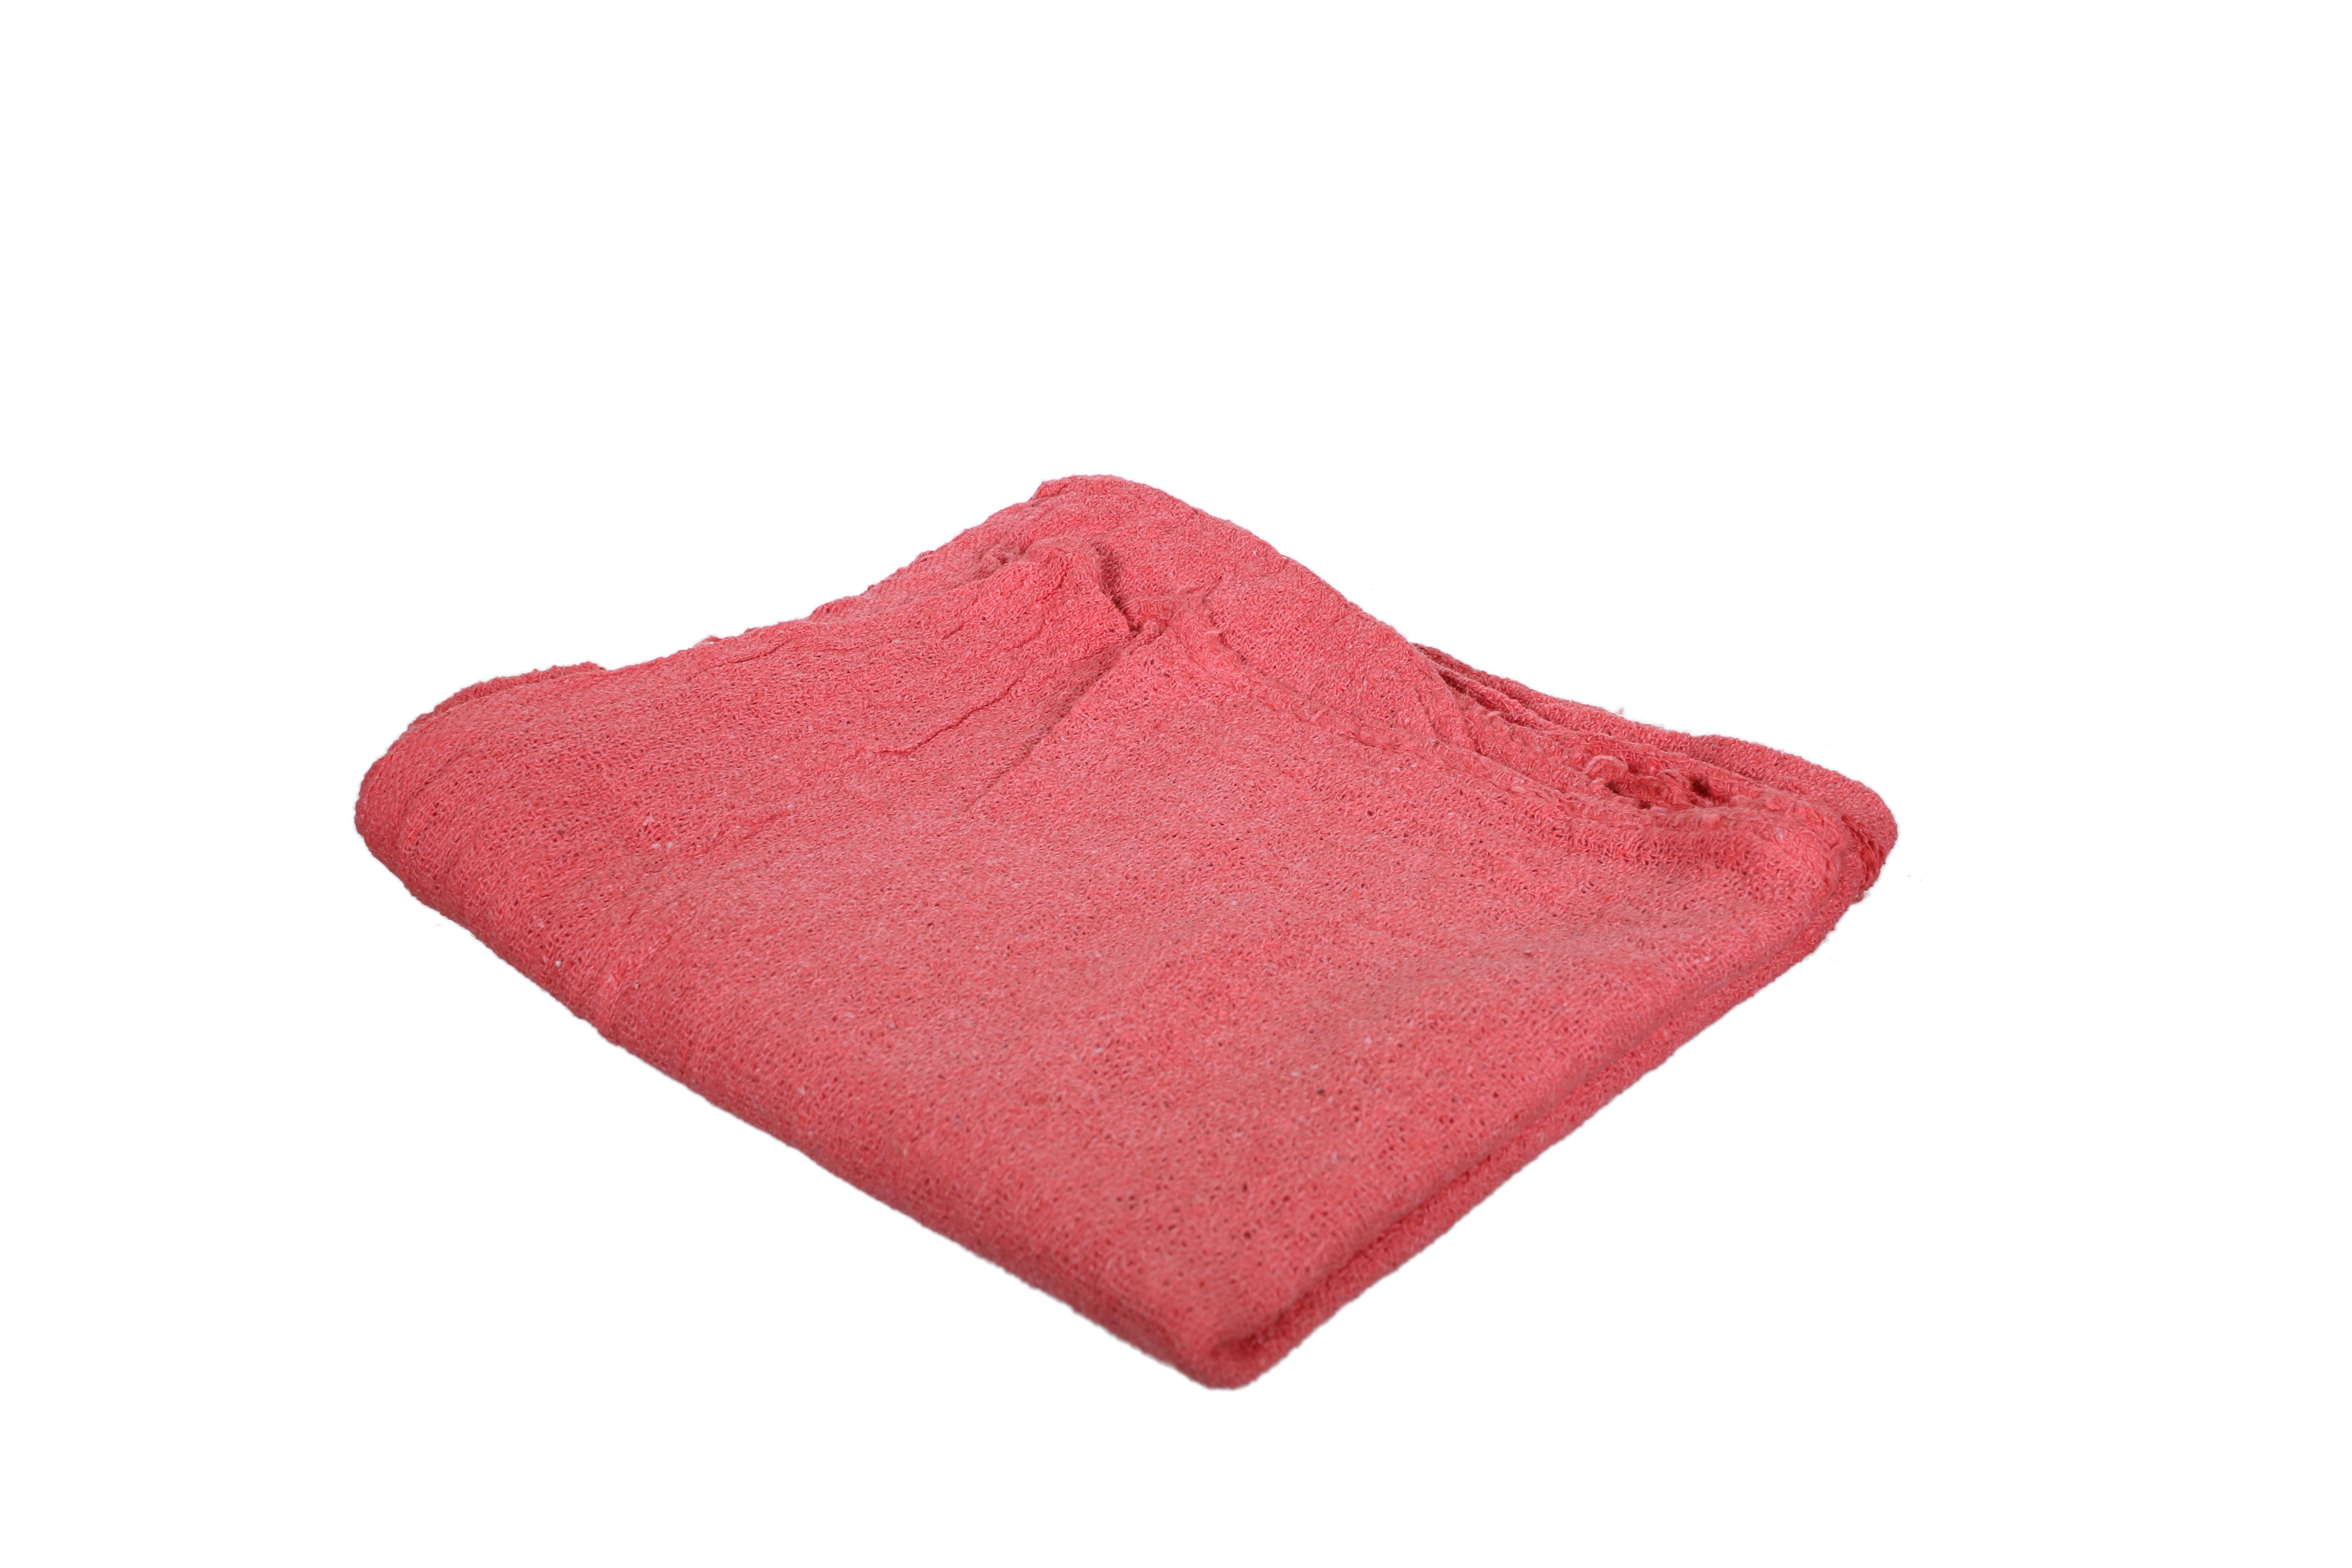 Diversitech ST-10 Shop Towel, Cotton, Red